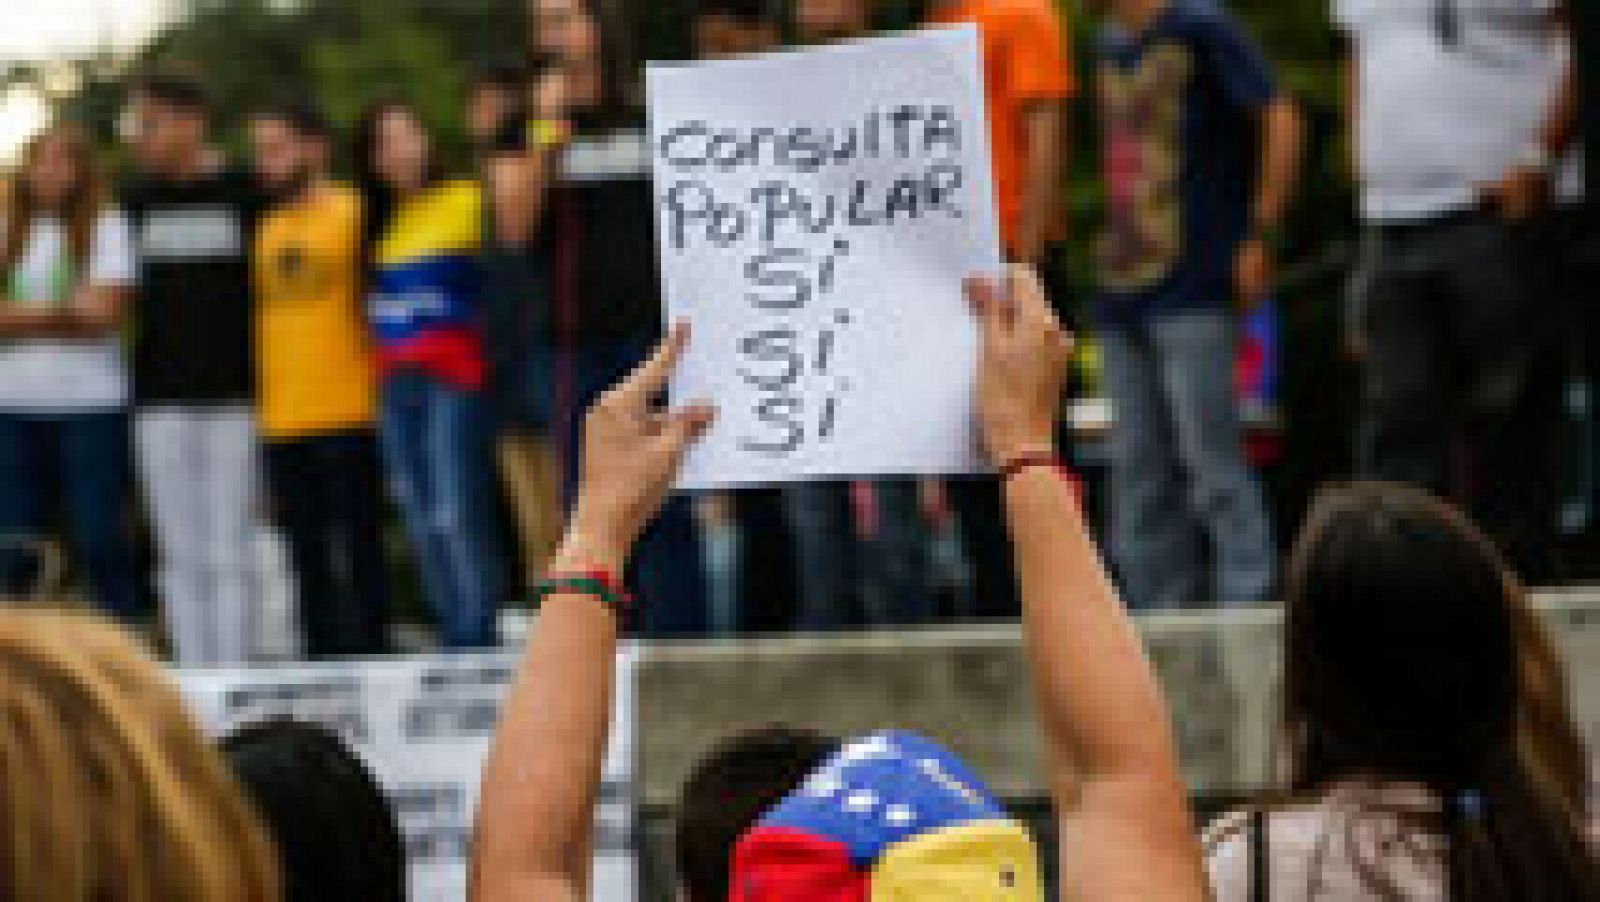 La oposición venezolana vota en una consulta simbólica contra el Gobierno de Maduro